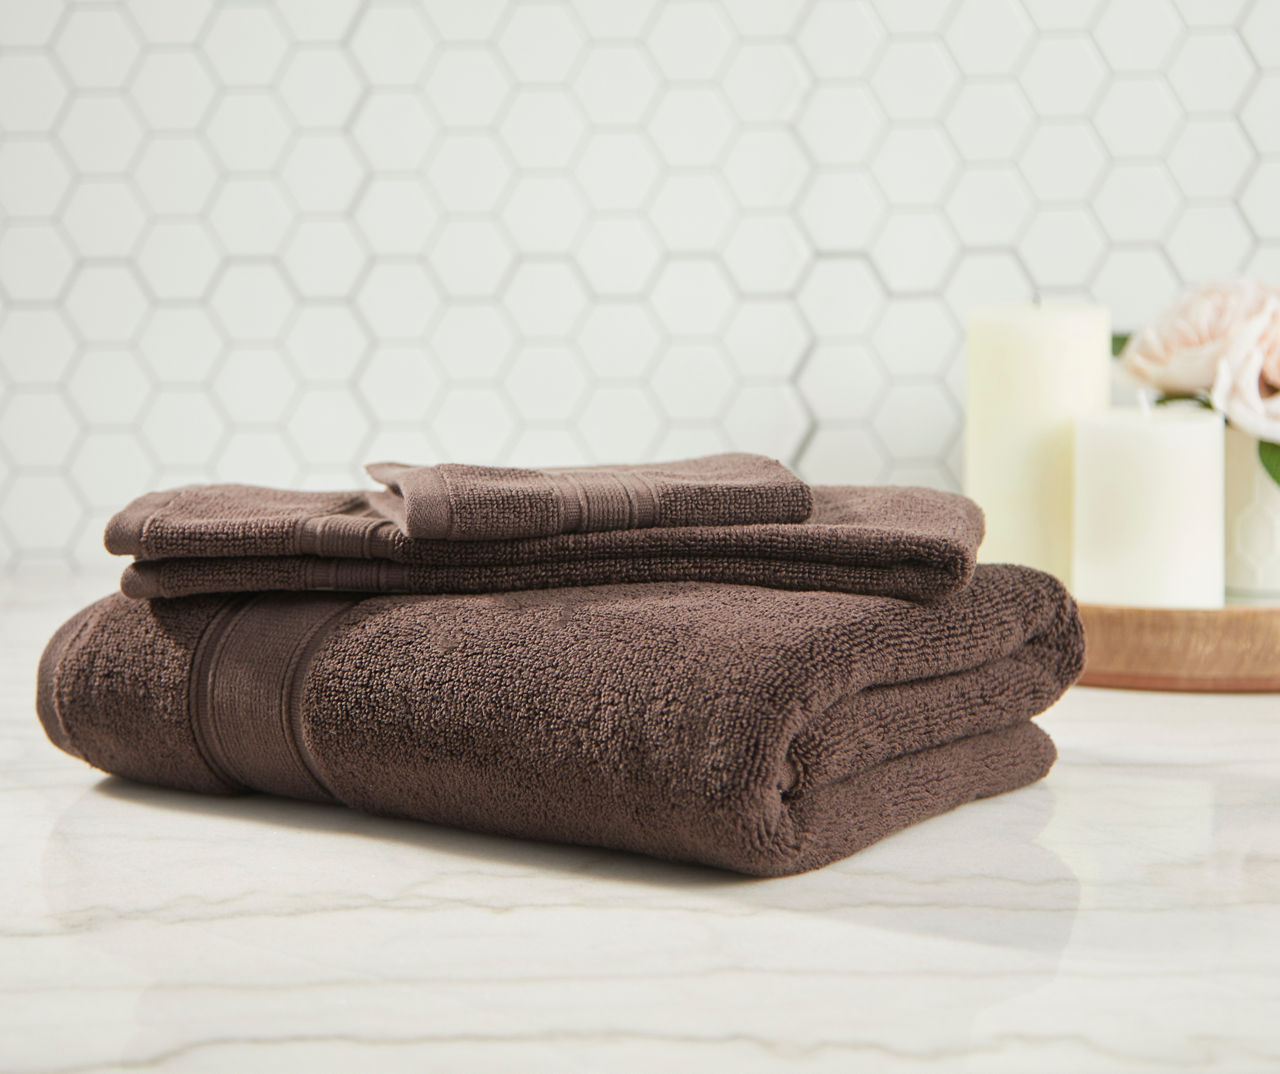  Bath Towel Sets Clearance Prime 3 Piece Brown Premium